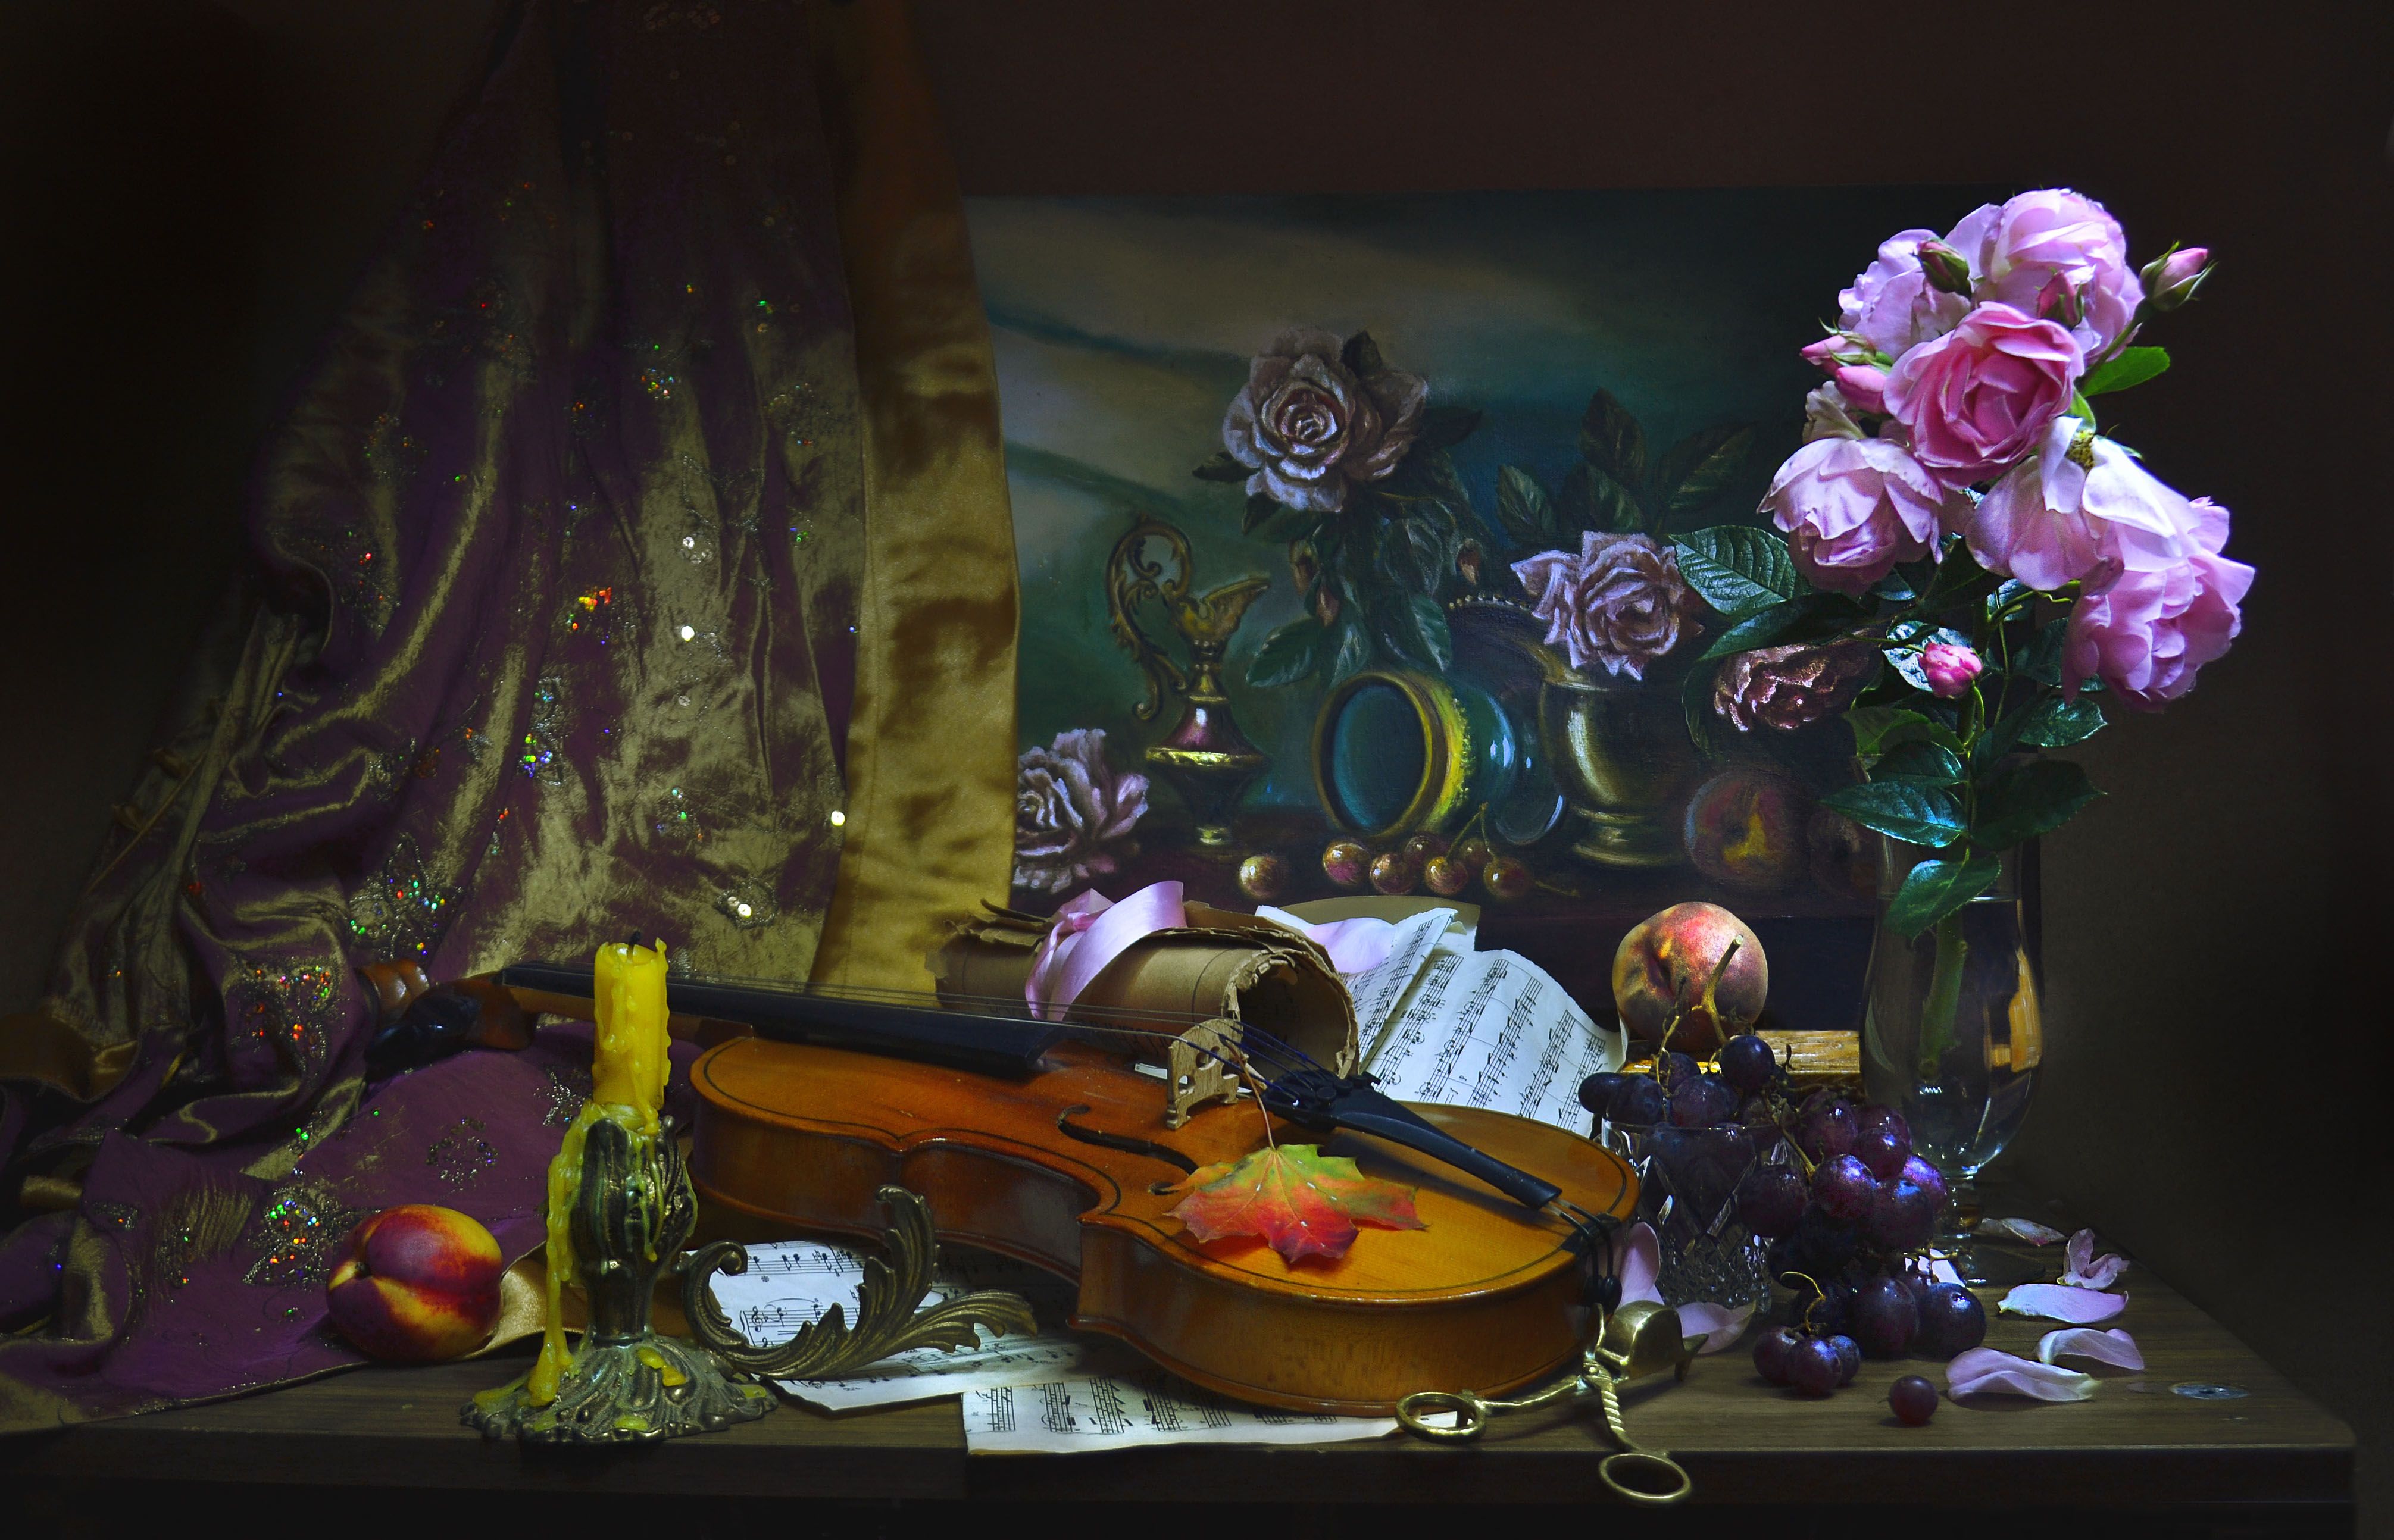 still life, натюрморт, цветы, фото натюрморт,  осень, октябрь, настроение,скрипка, розы, ноты, свеча, подсвечник, картина, кленовые листья, Колова Валентина